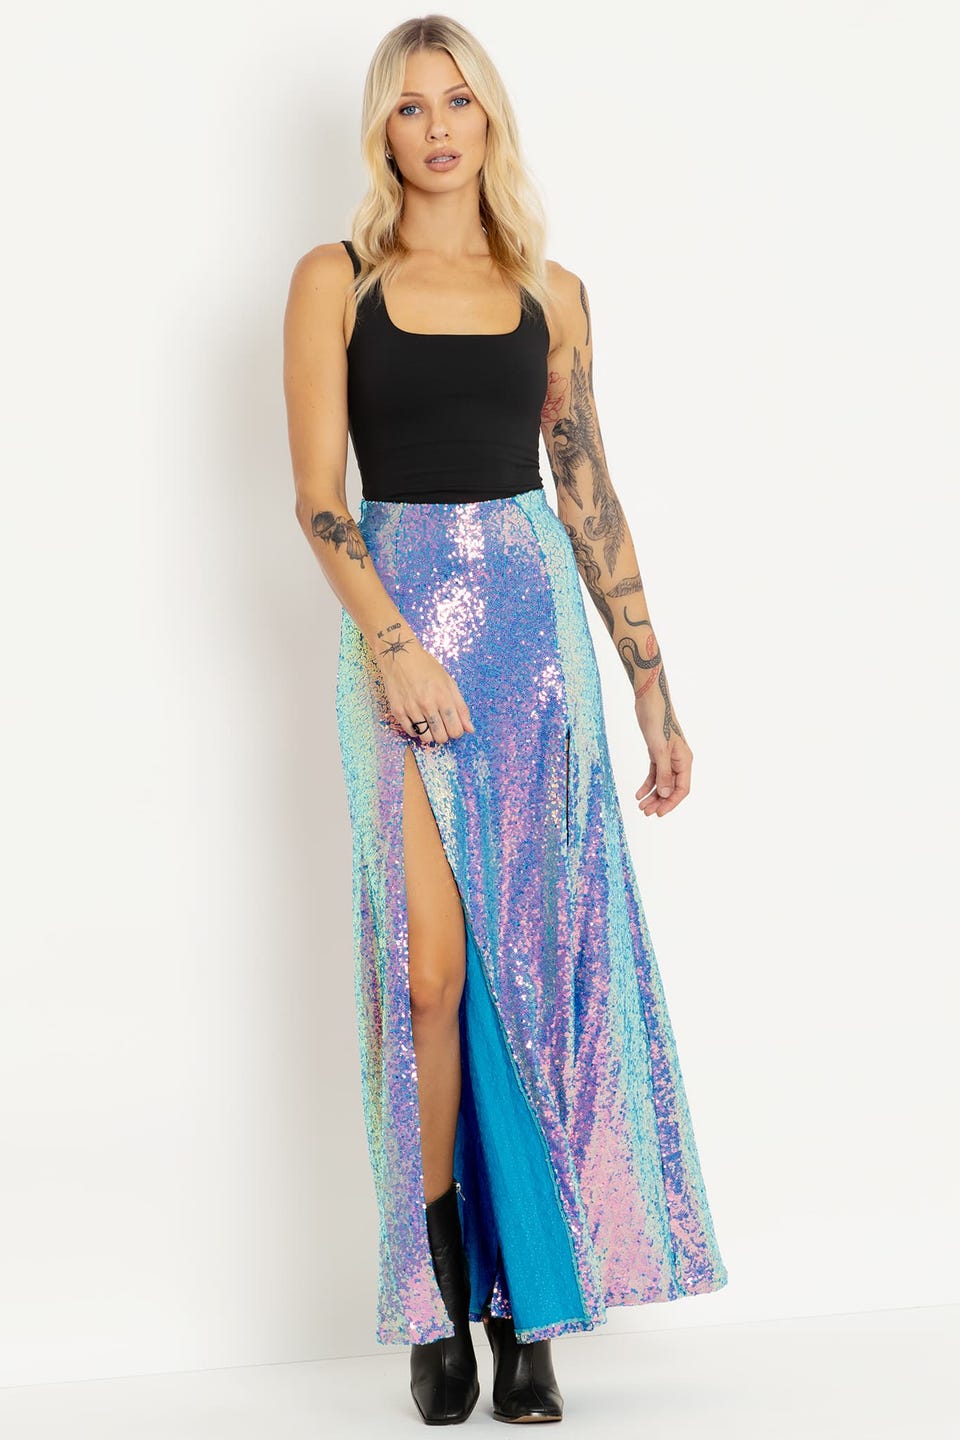 Sparkle Sparkle Teal Sequin Split Skirt - Limited